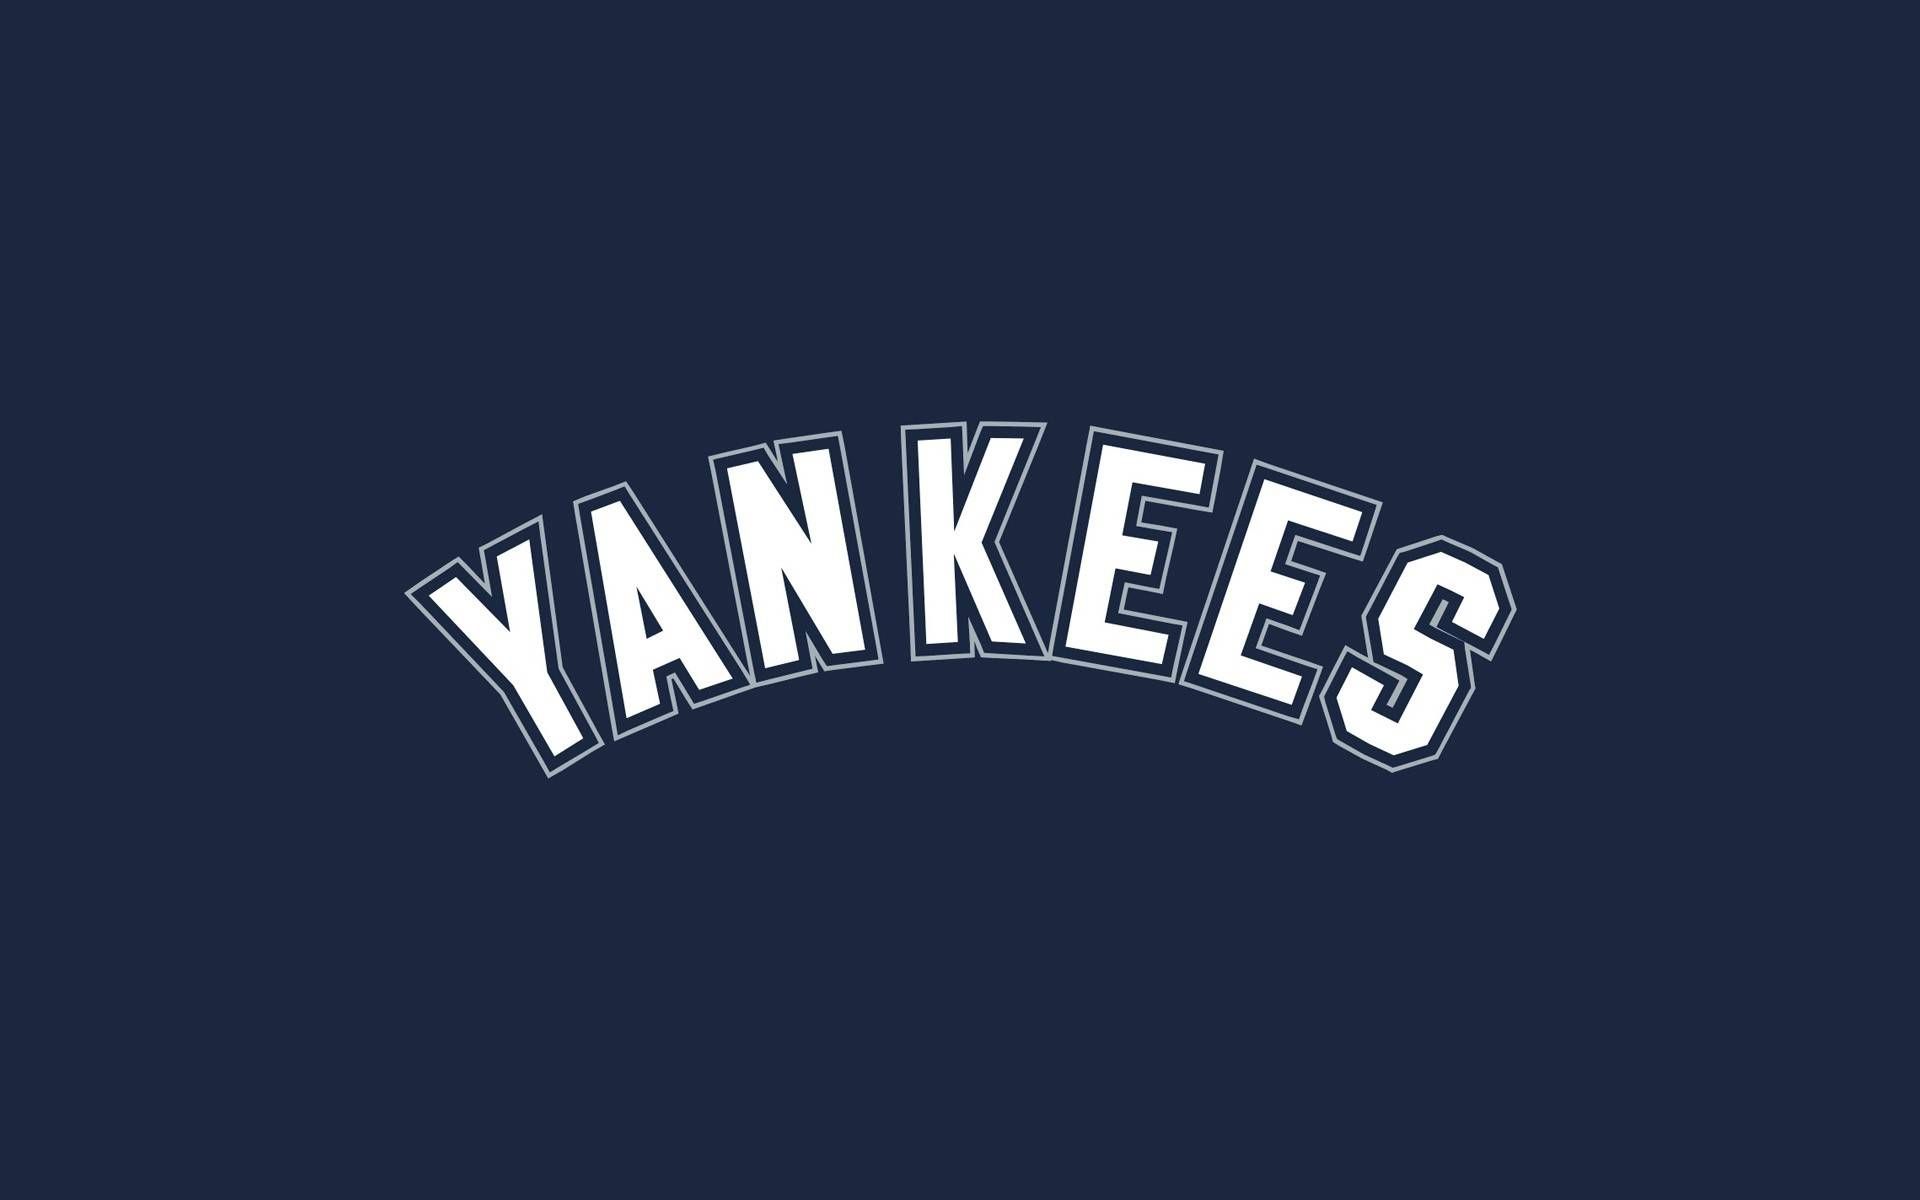 Free best screensavers: New york yankees screensaver